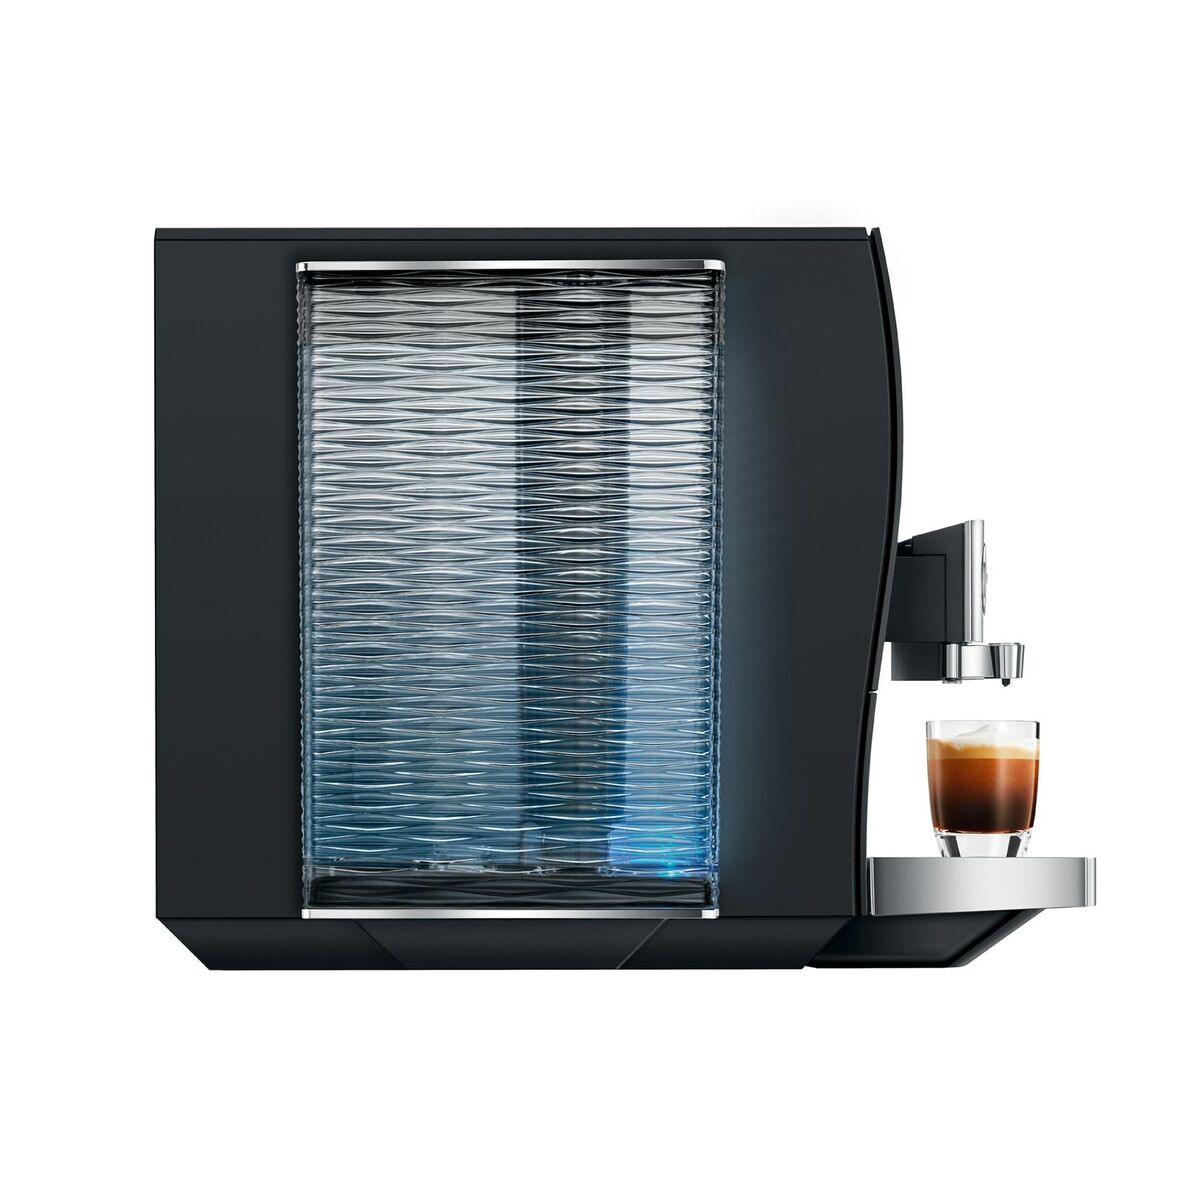 Superautomatic Coffee Maker Jura Black (Espresso machine) (Refurbished A)